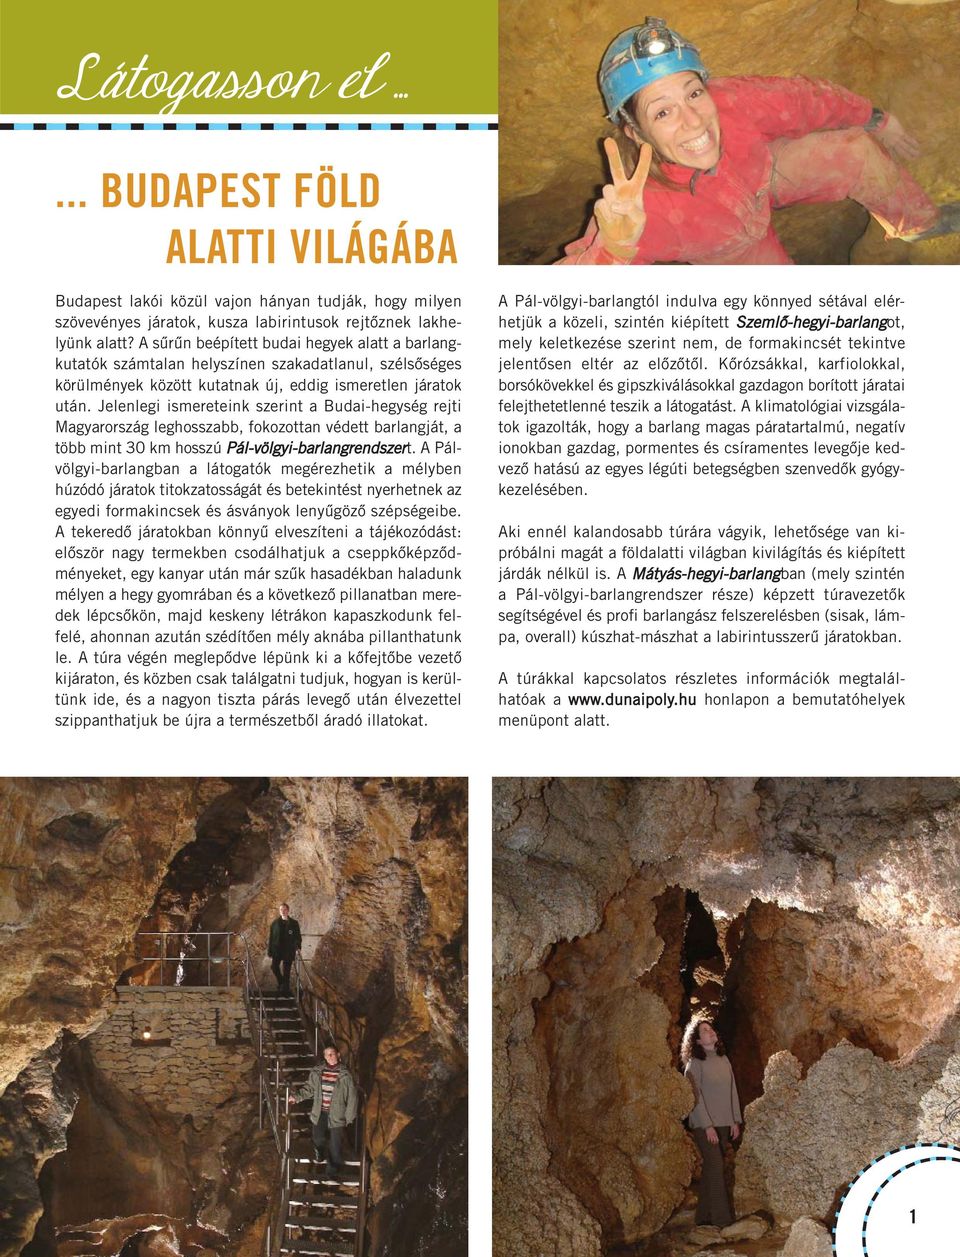 Jelenlegi ismereteink szerint a Budai-hegység rejti Magyarország leghosszabb, fokozottan védett barlangját, a több mint 30 km hosszú Pál-völgyi-barlangrendszert.